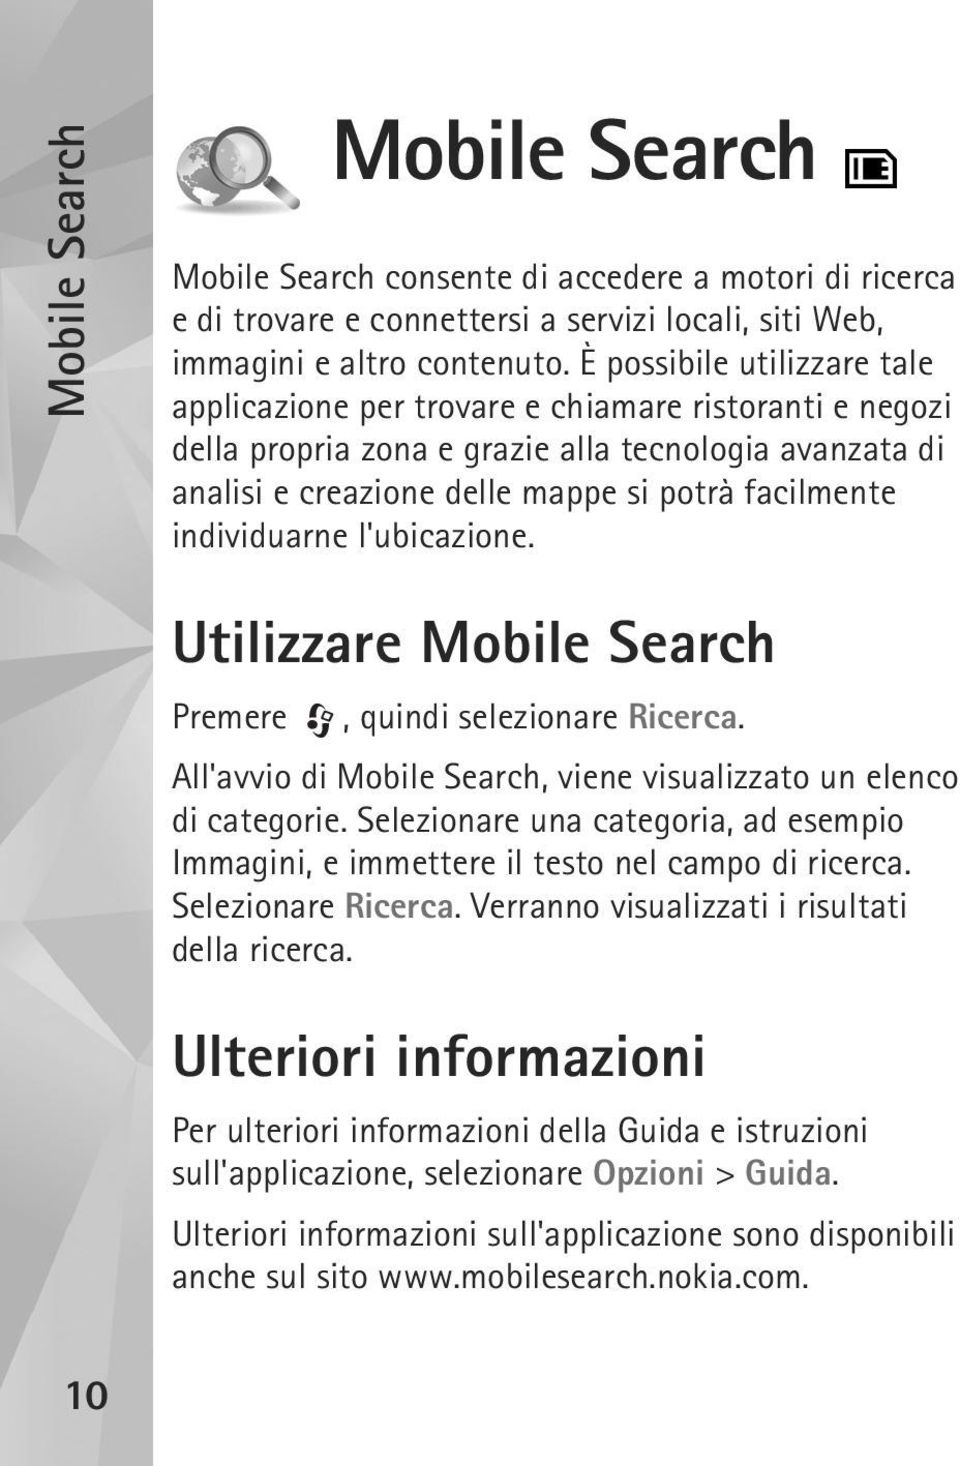 individuarne l'ubicazione. Utilizzare Mobile Search Premere, quindi selezionare Ricerca. All'avvio di Mobile Search, viene visualizzato un elenco di categorie.